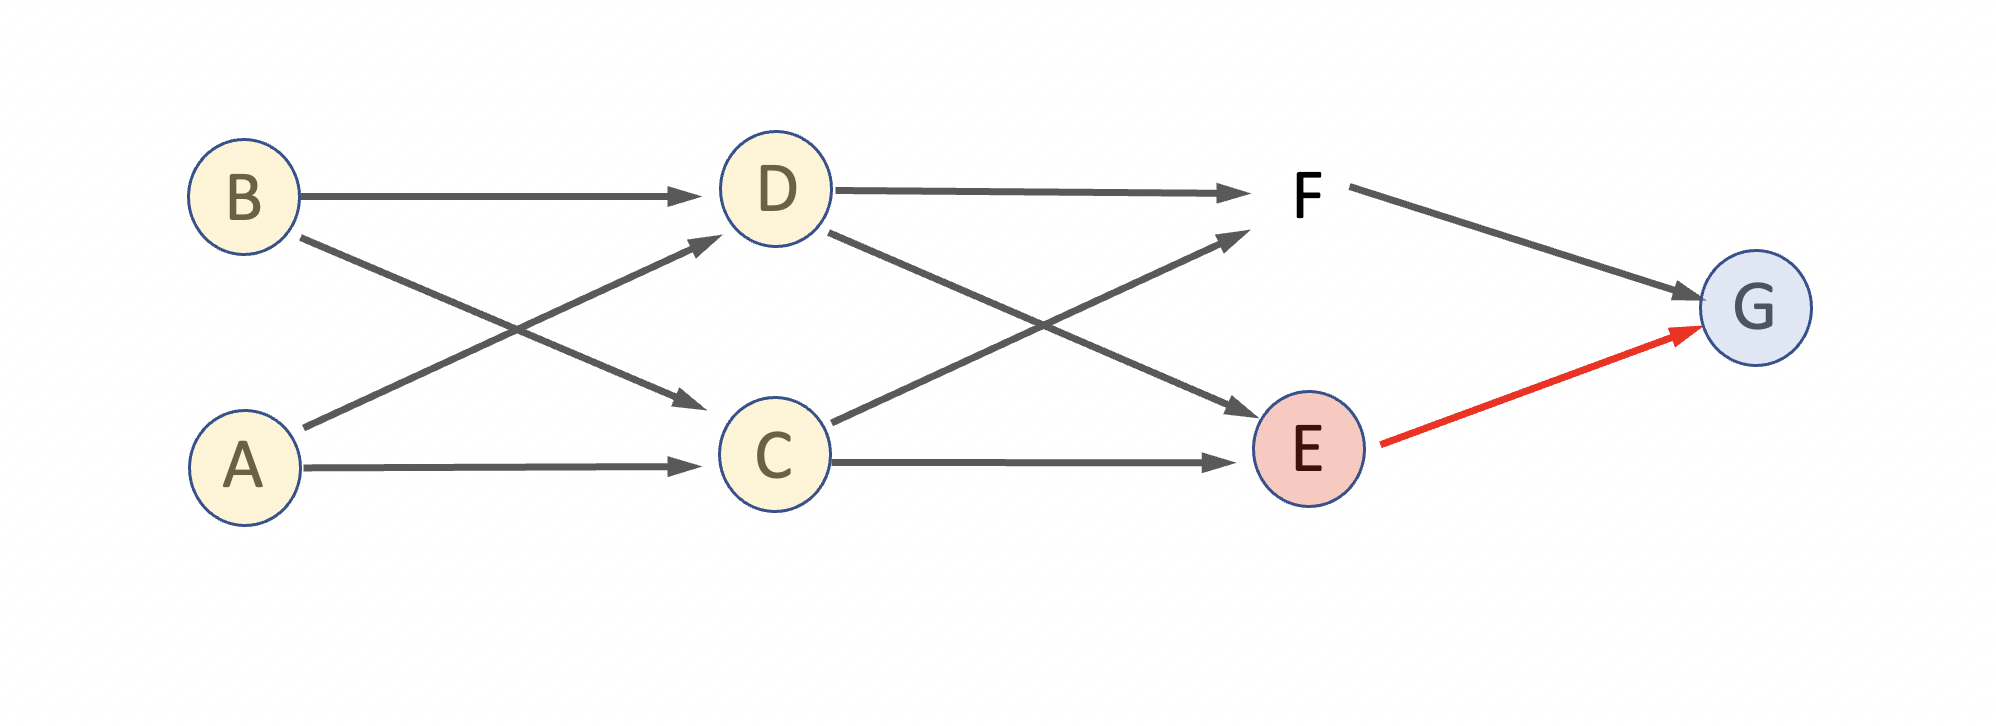 Diagrama de flechas con un cruzamiento recurrente entre hermanos. El objetivo es calcular \(a_{EG}\). La flecha roja indica una relación de parentesco directo entre los dos individuos a los que les queremos calcular el parentesco aditivo (E y G), mientras que el círculo rojo indica el ancestro de esa relación. Los círculos amarillos indican ancestros comunes a ambos candidatos.